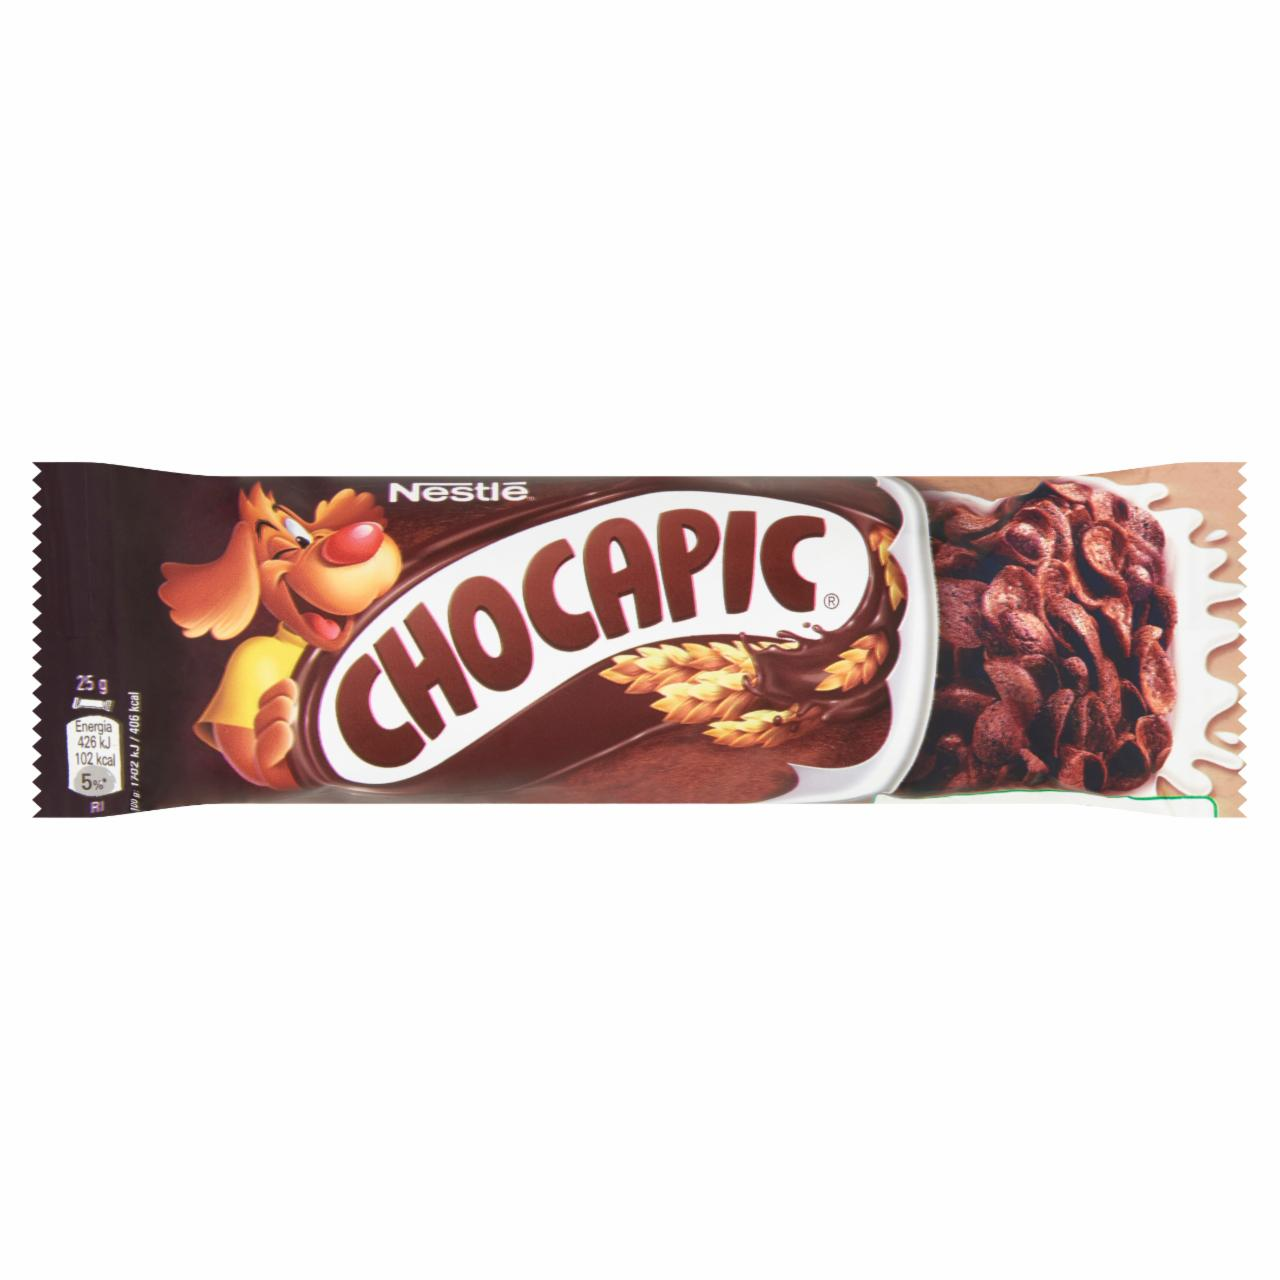 Zdjęcia - Nestlé Chocapic Śniadaniowy baton zbożowy 25 g